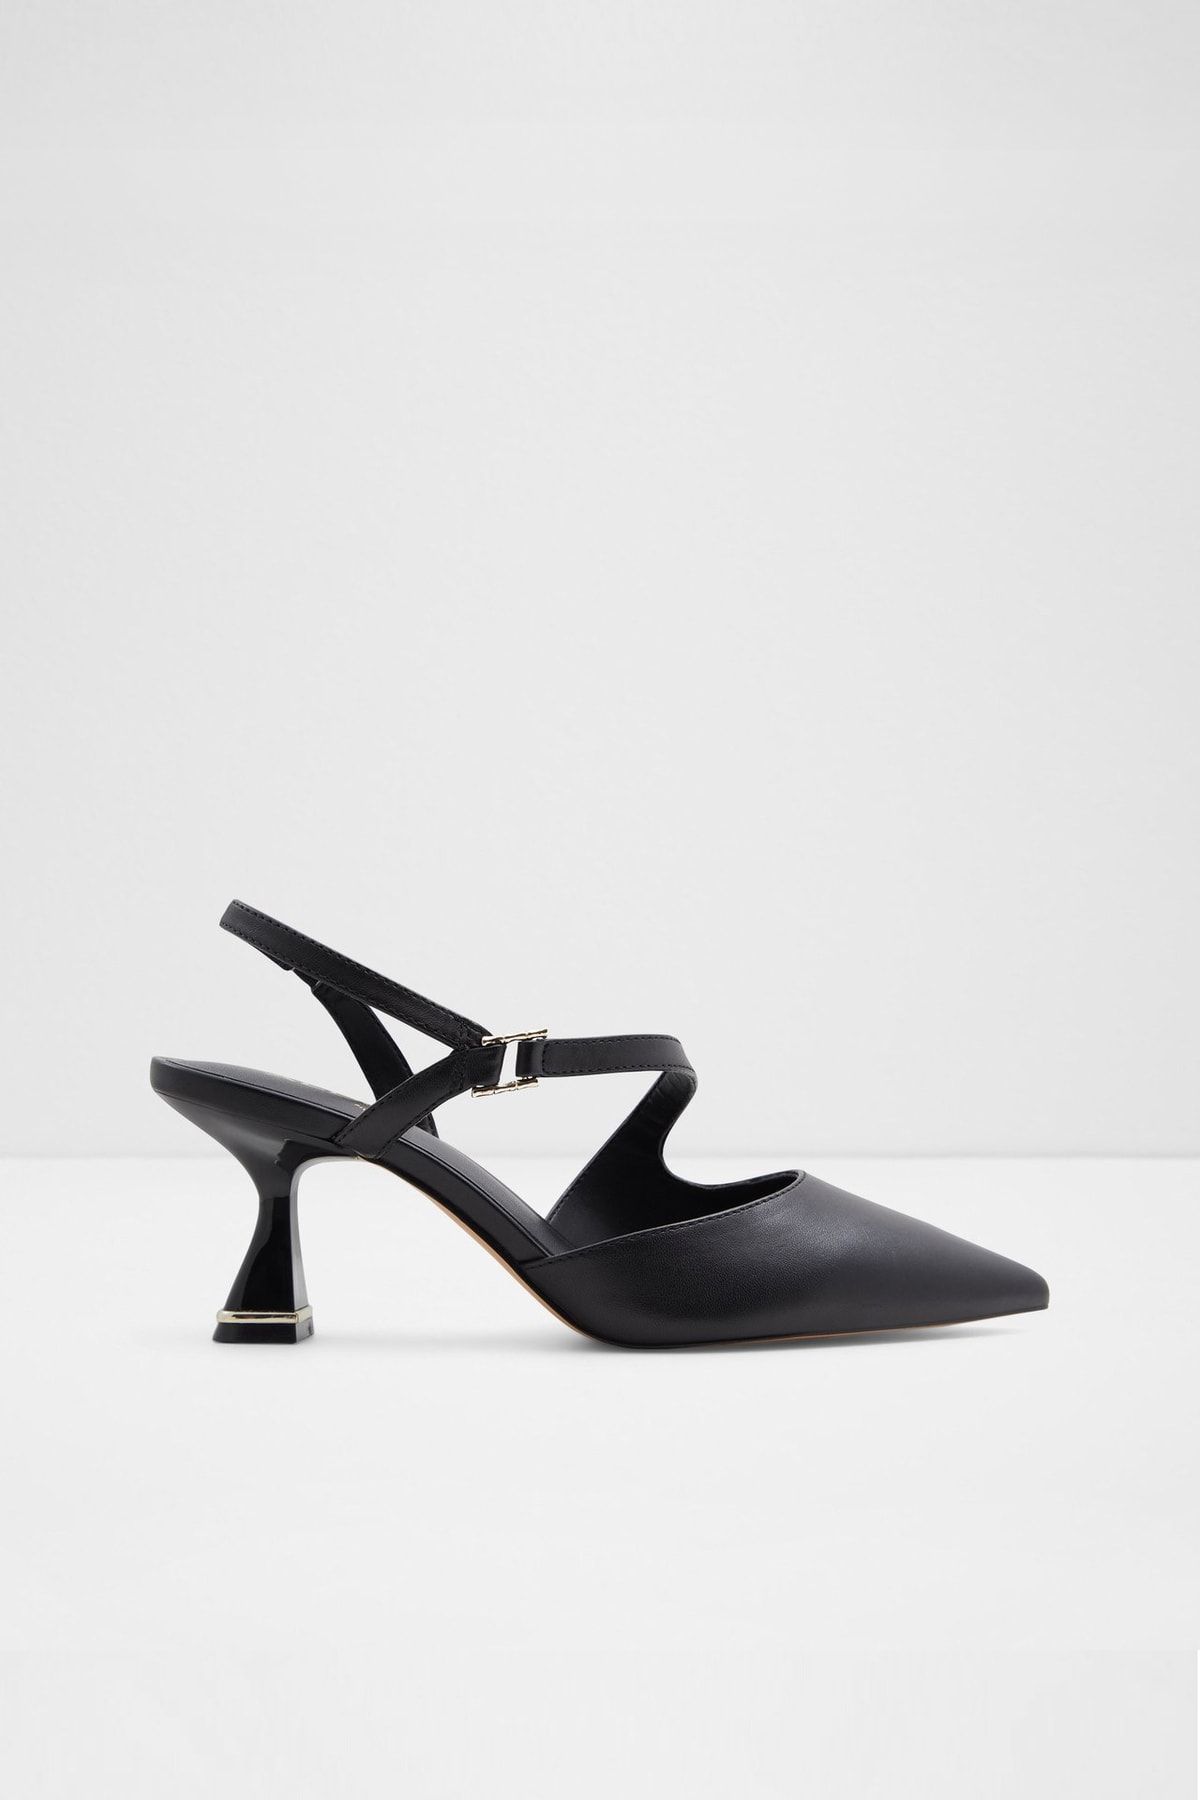 Aldo Sevılla - Siyah Kadın Topuklu Ayakkabı